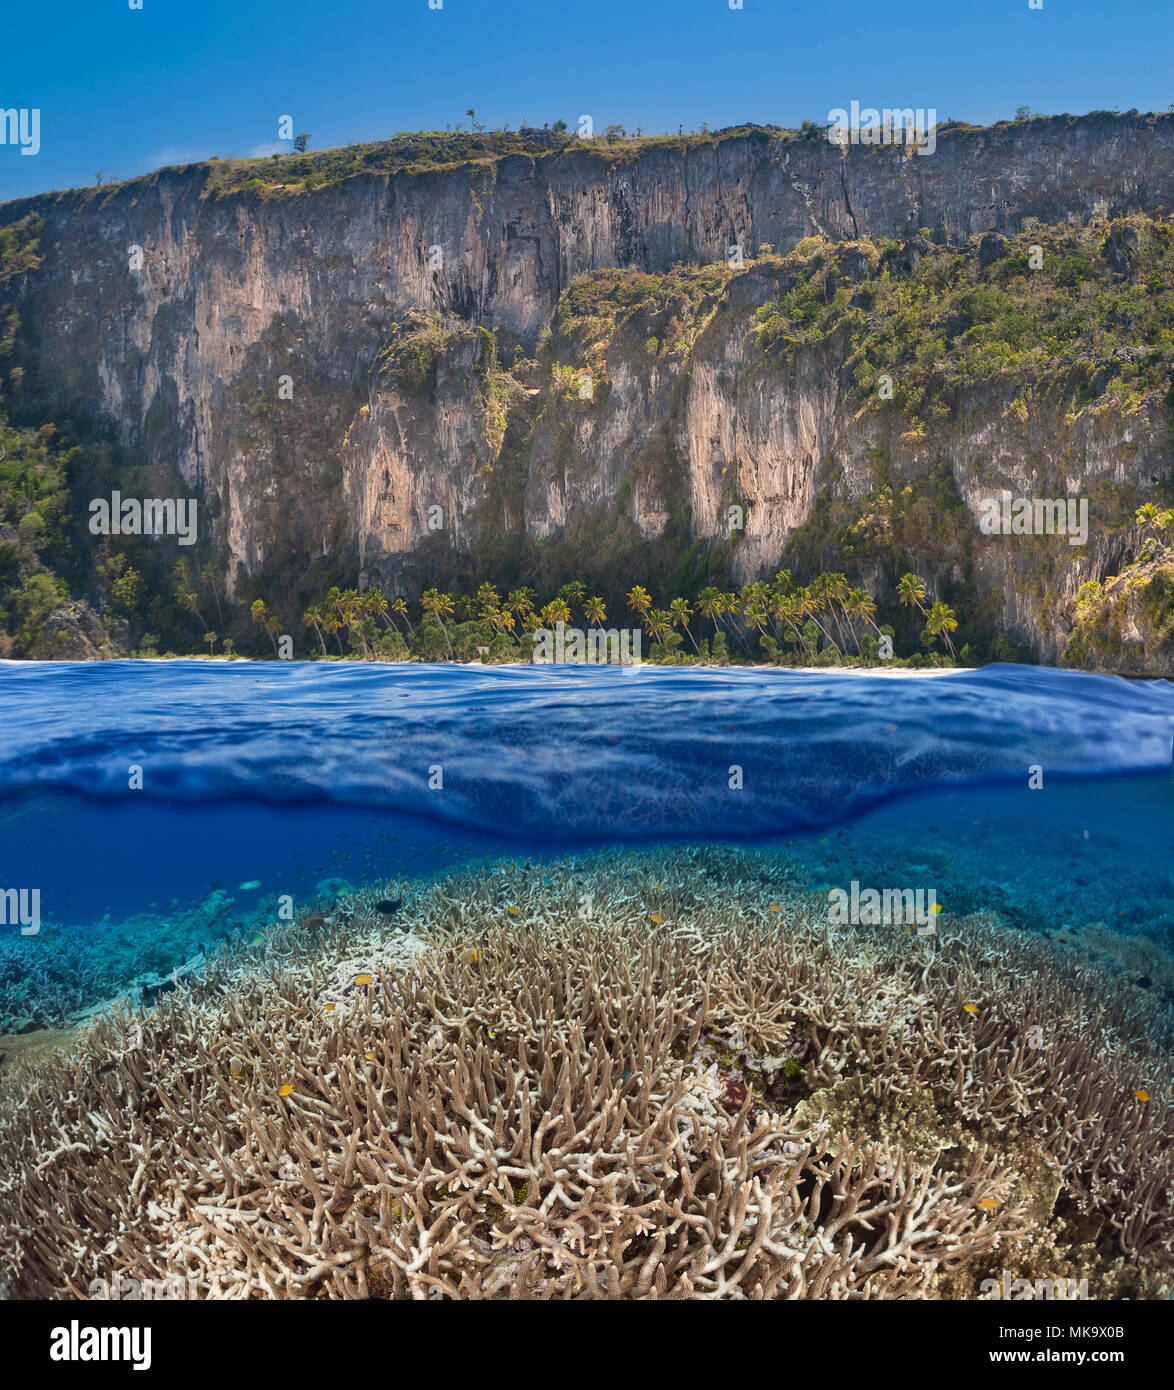 Eine Szene mit einem flachen hard Coral Reef unten und eine indonesische Insel oben. Stockfoto